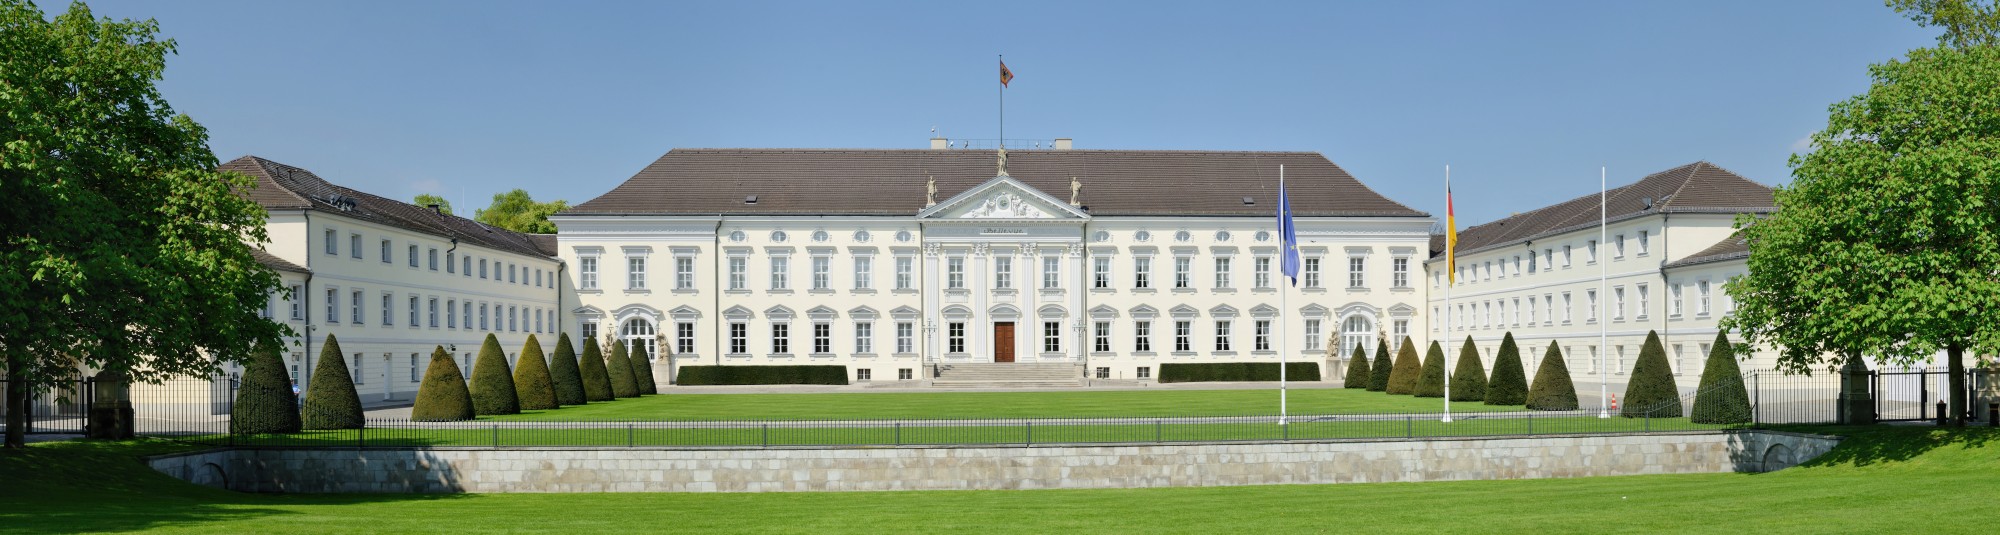 Berlin - Schloss Bellevue2